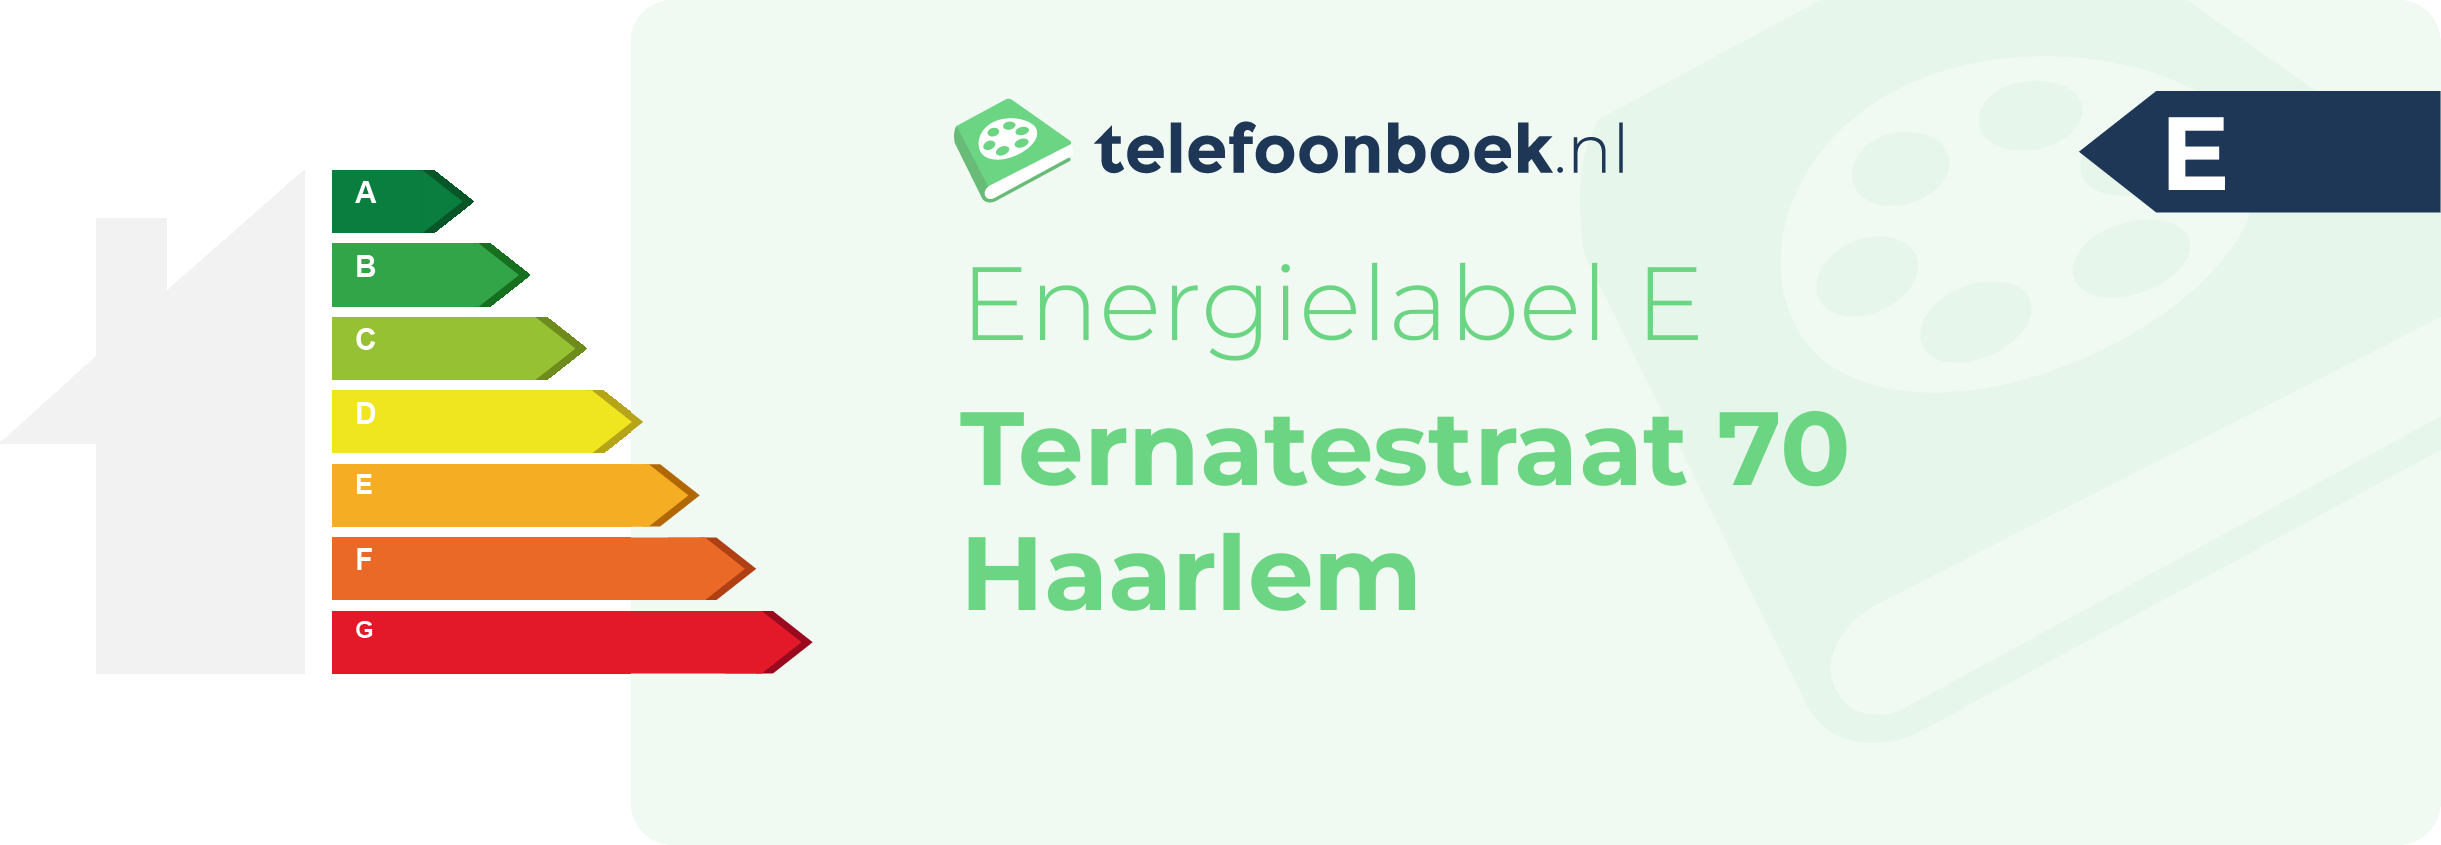 Energielabel Ternatestraat 70 Haarlem